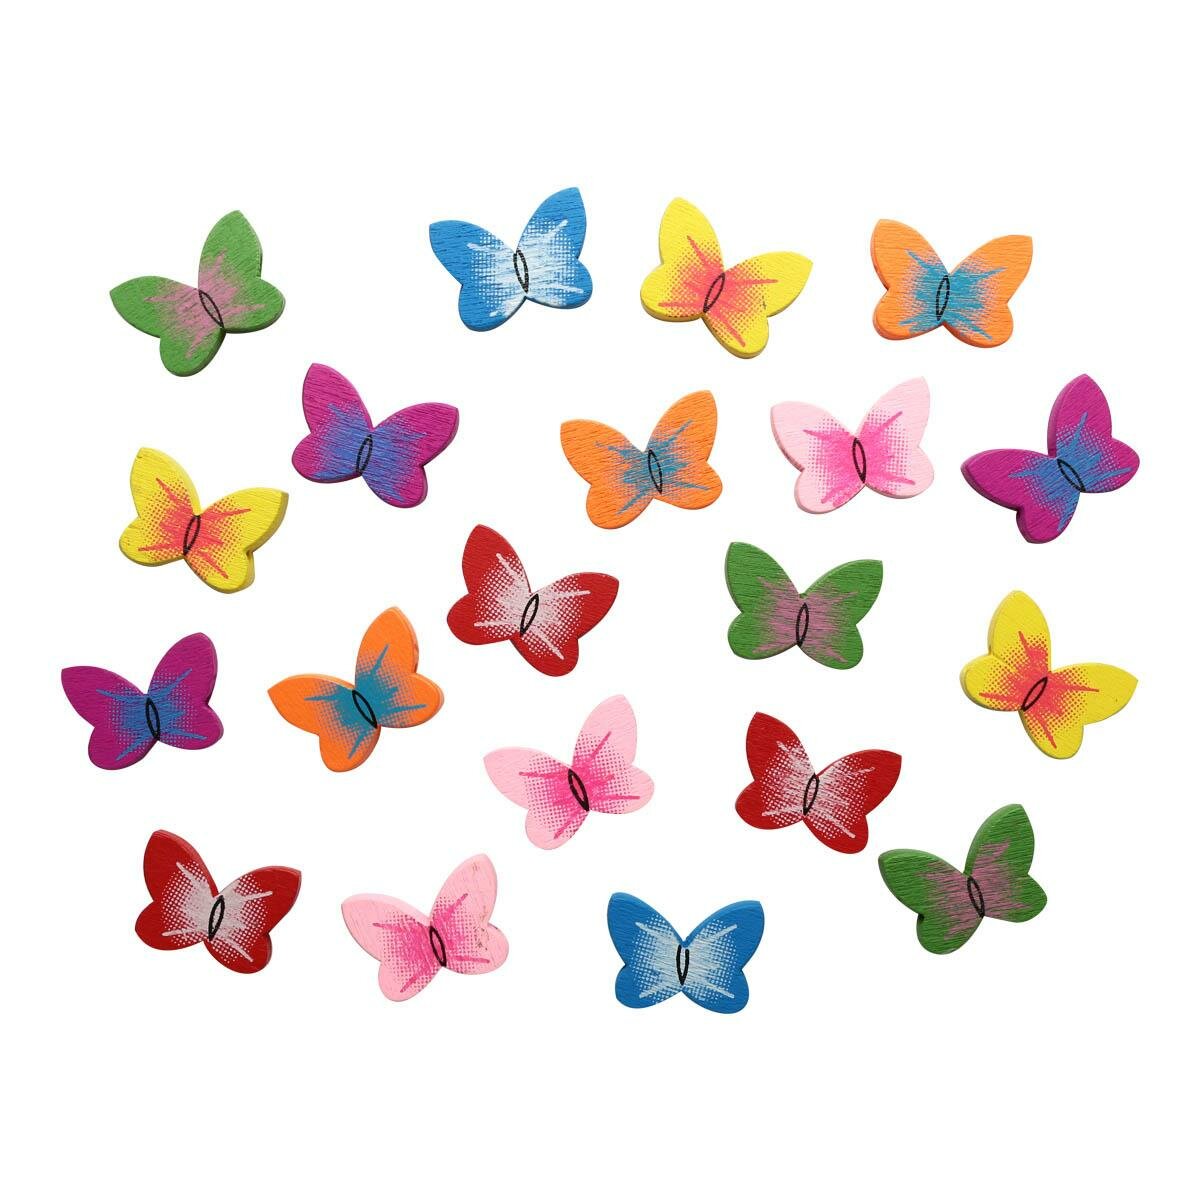 Бусины Astra&Craft "Бабочки", деревянные, цветной микс, 15 г, 4AR401, 25 шт